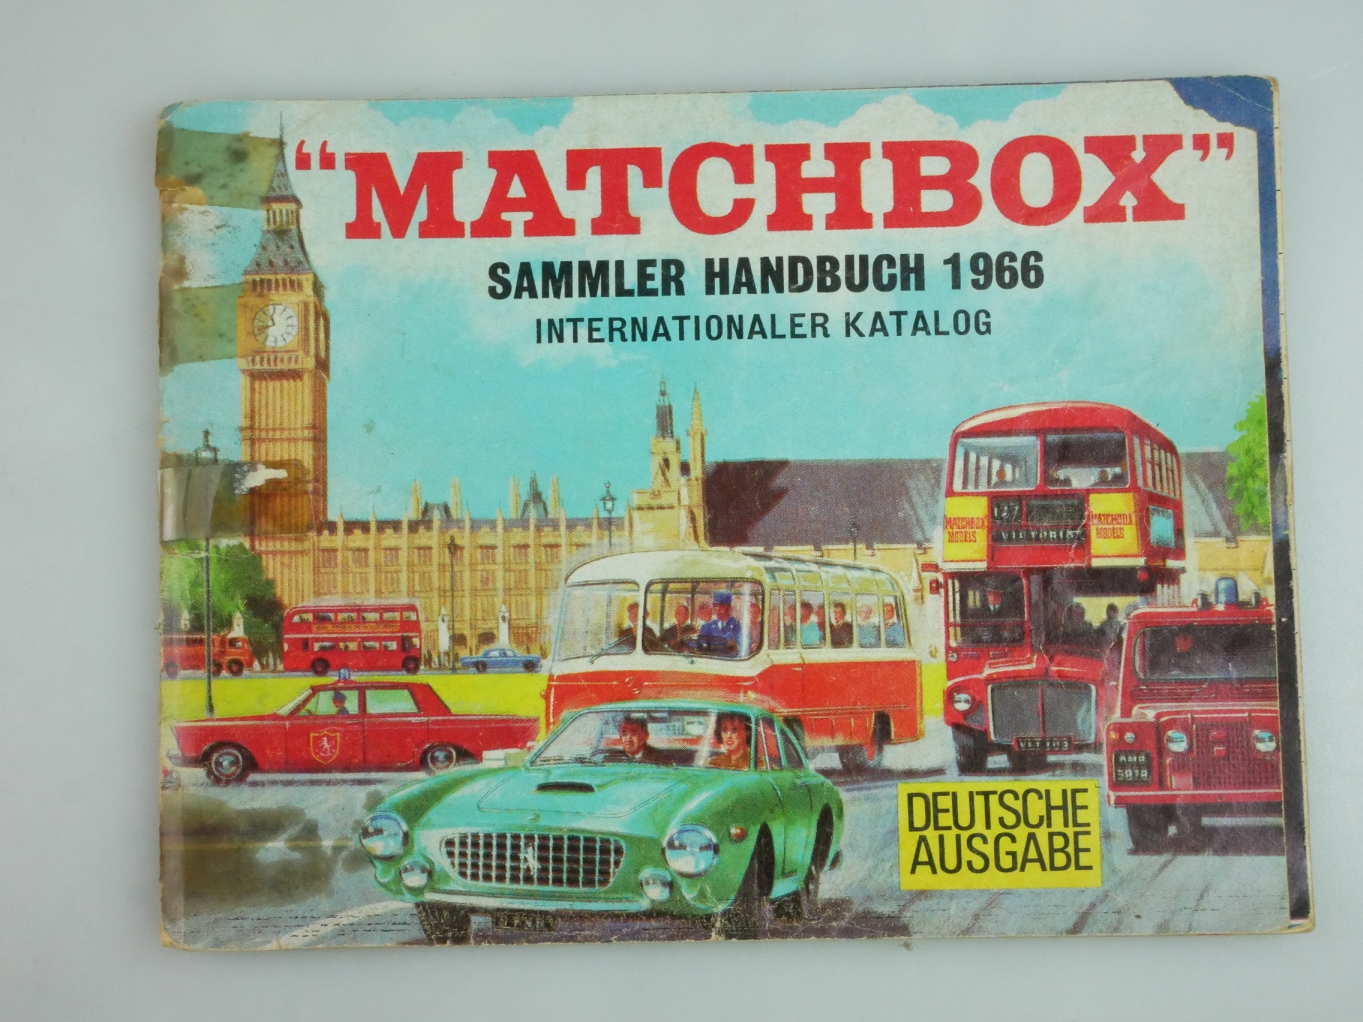 Matchbox Sammler Handbuch 1966 Deutsche Ausgabe - 20904